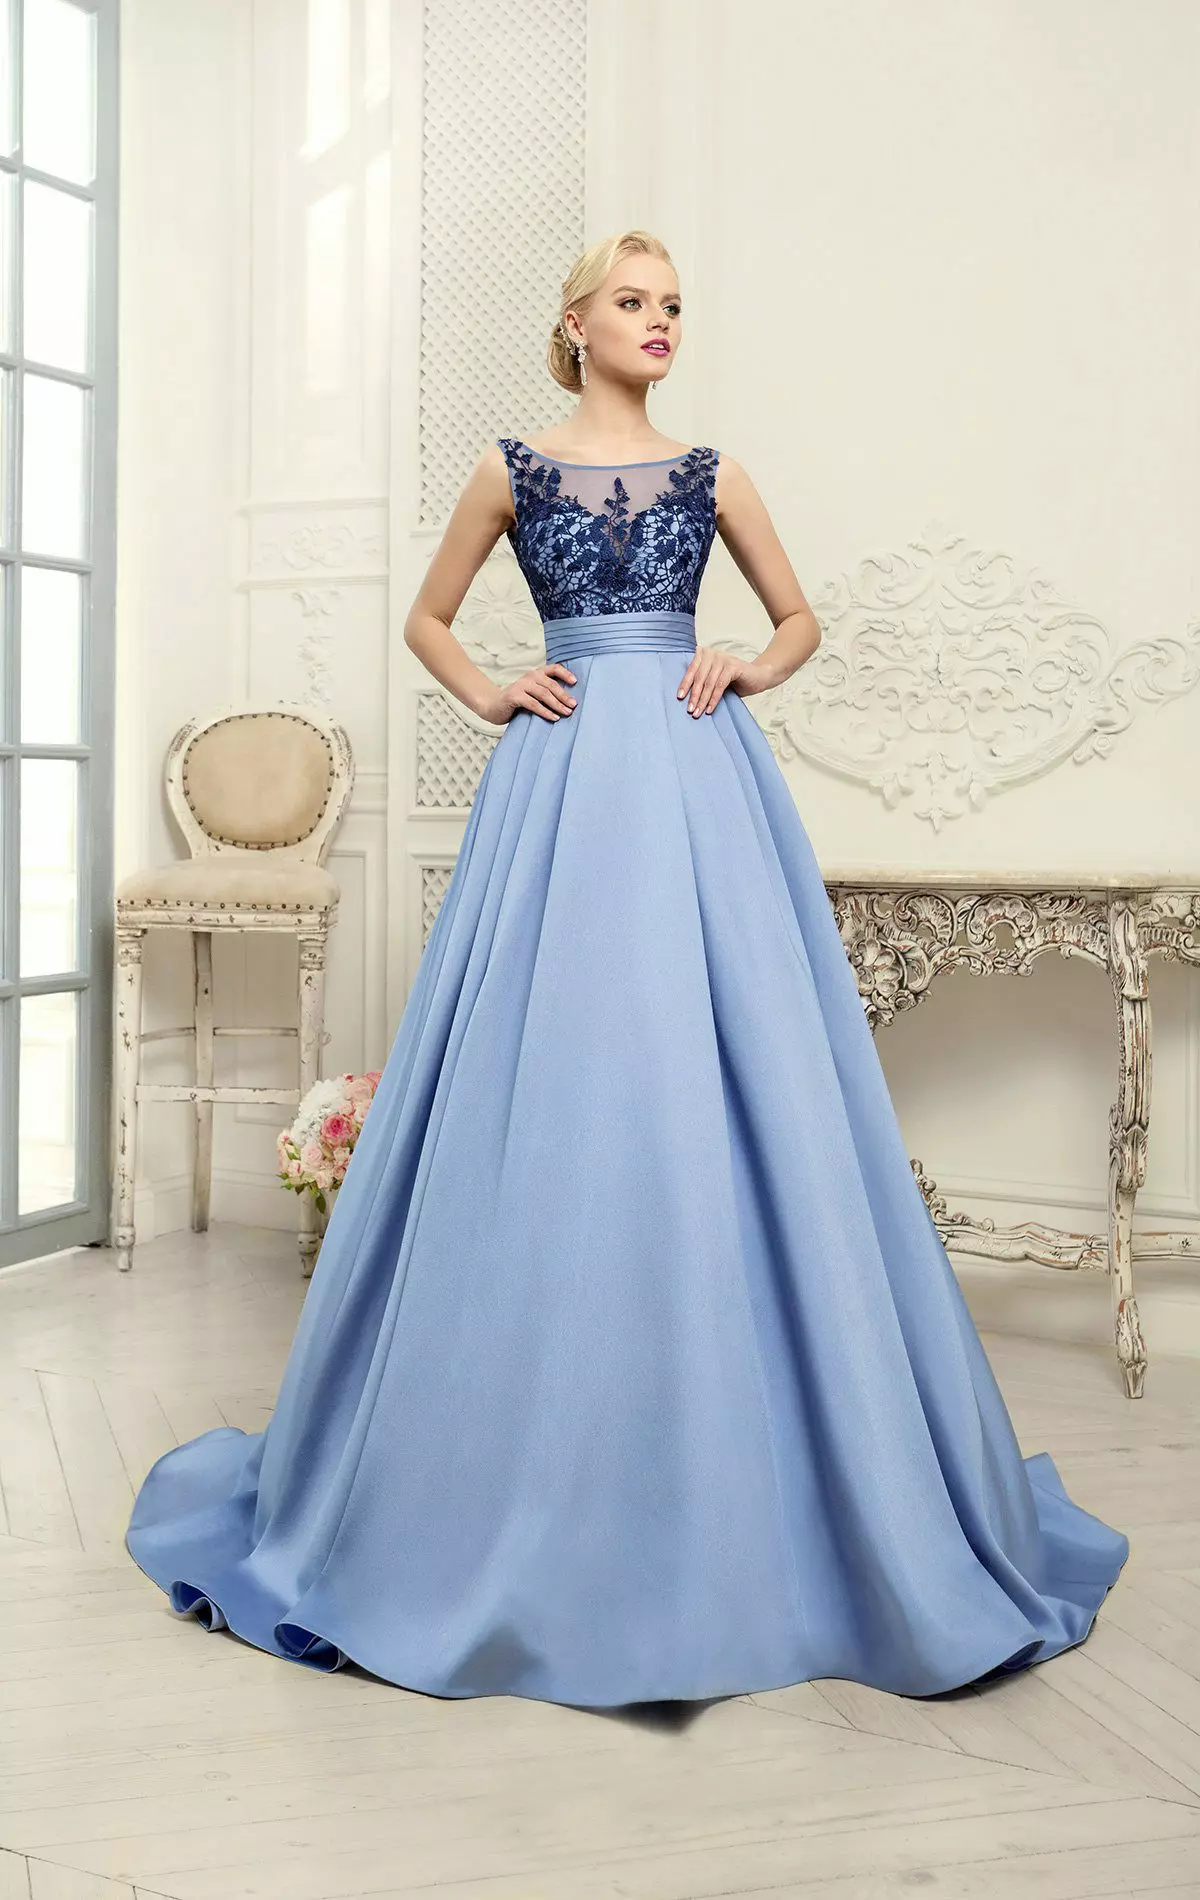 Gaun pengantin biru dari koleksi kecemerlang dari naviblue bridal